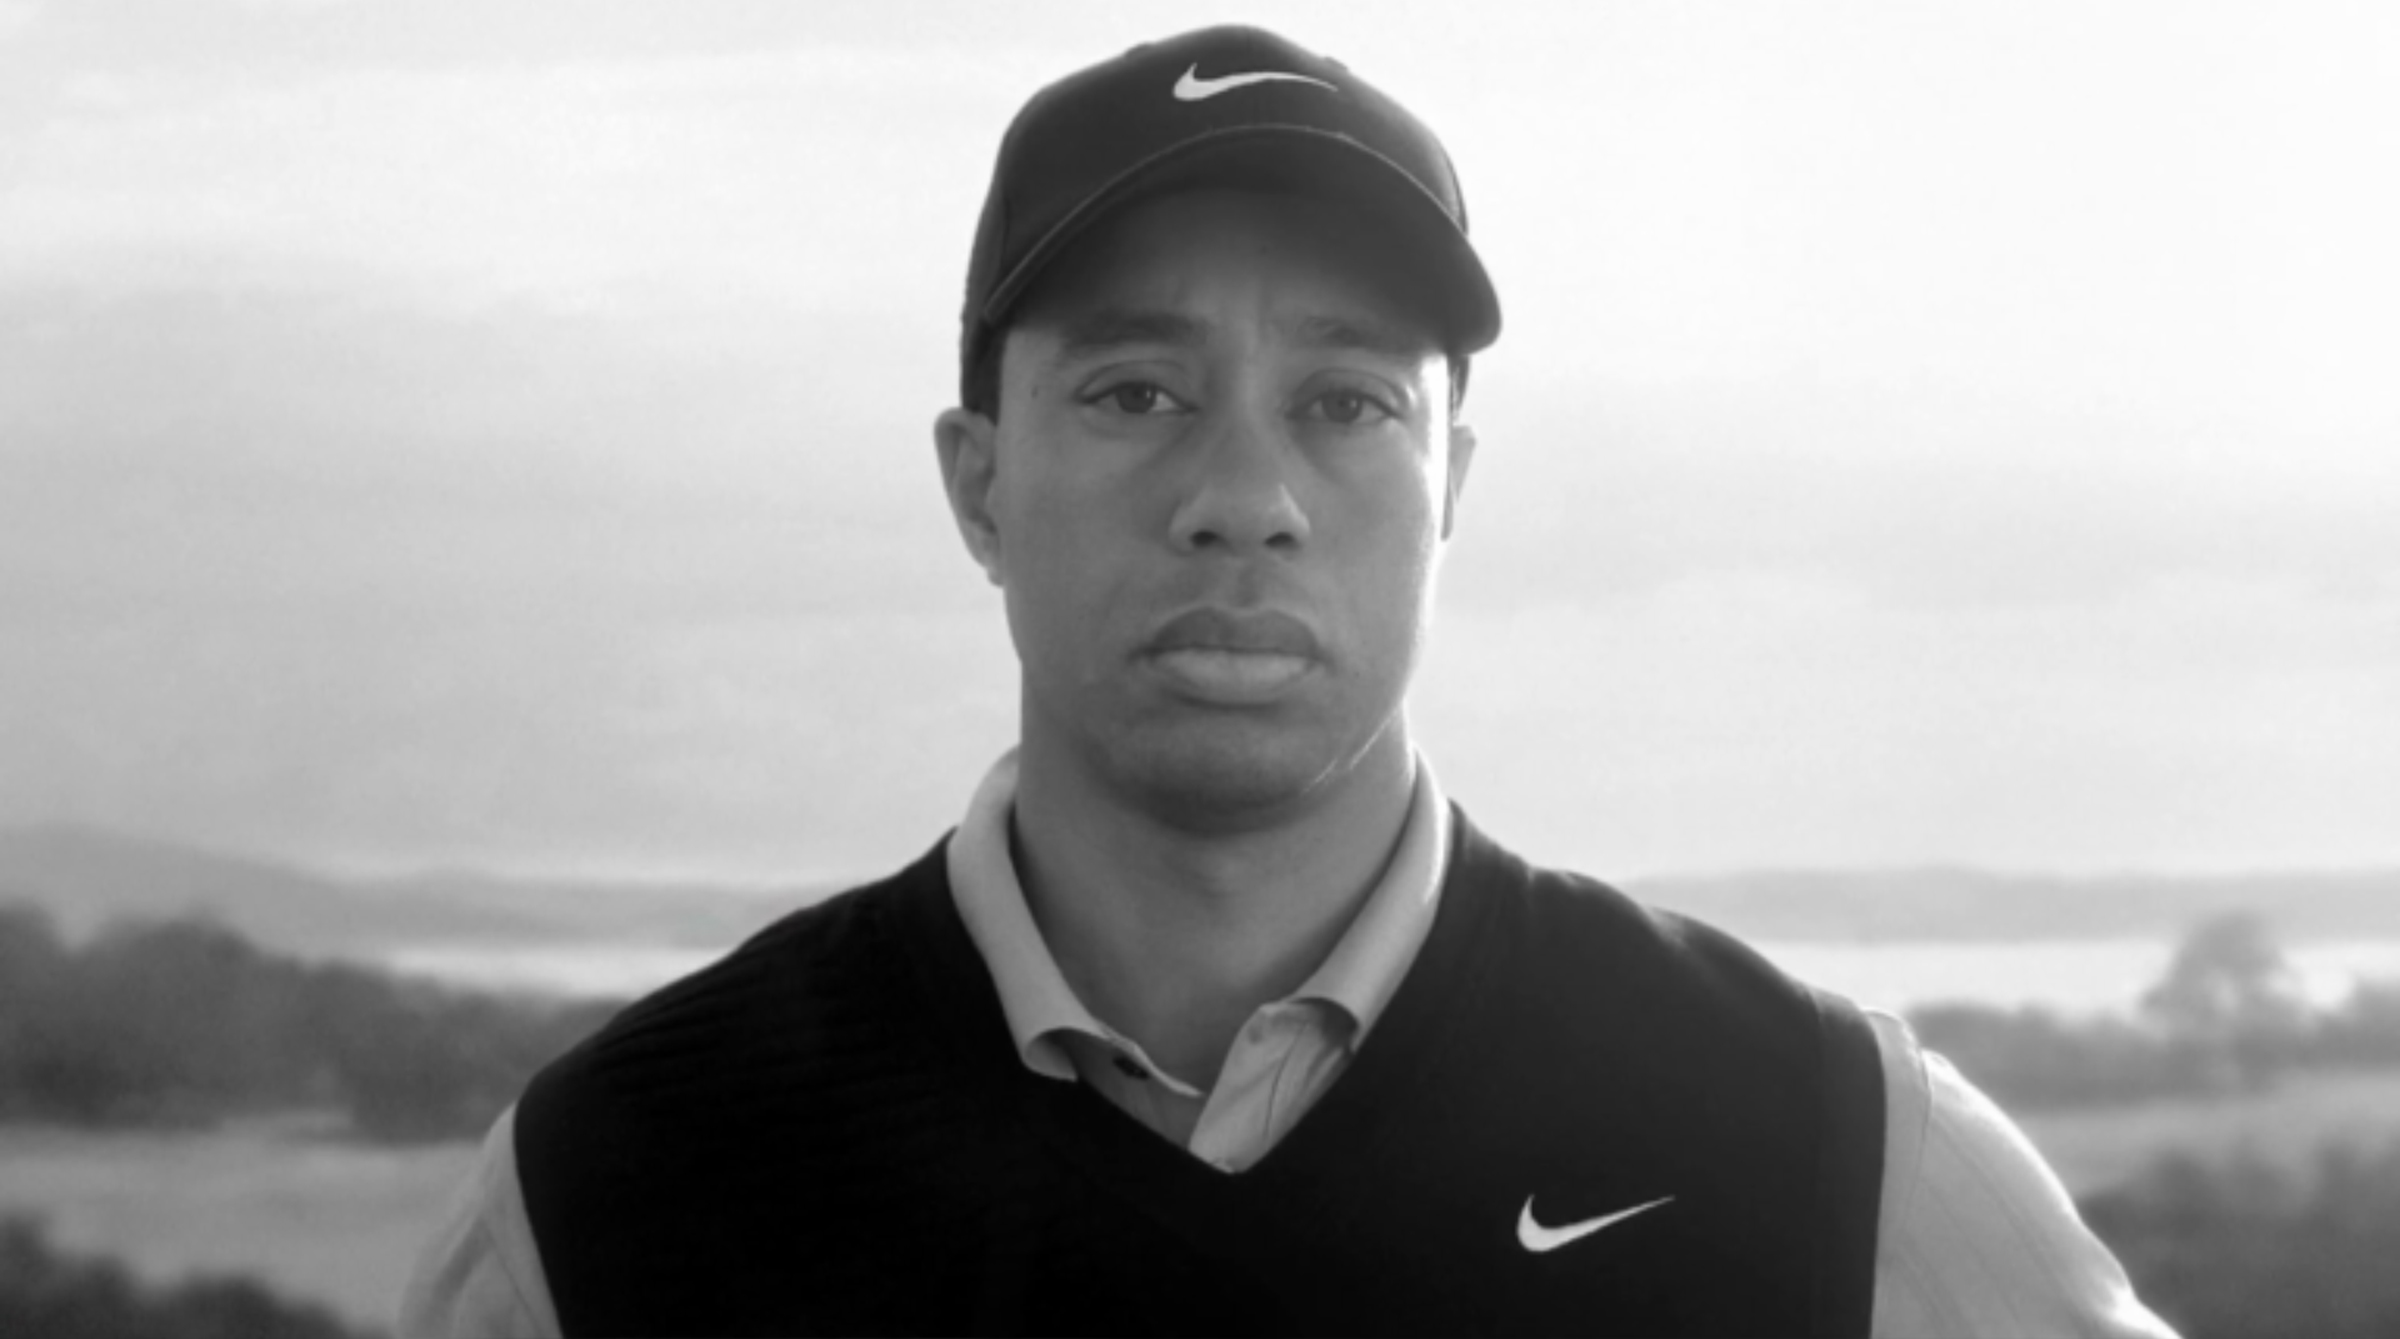 Tiger Woods, Otrohet, comeback, Elin Nordegren, Golf, Nike, reklamfilm